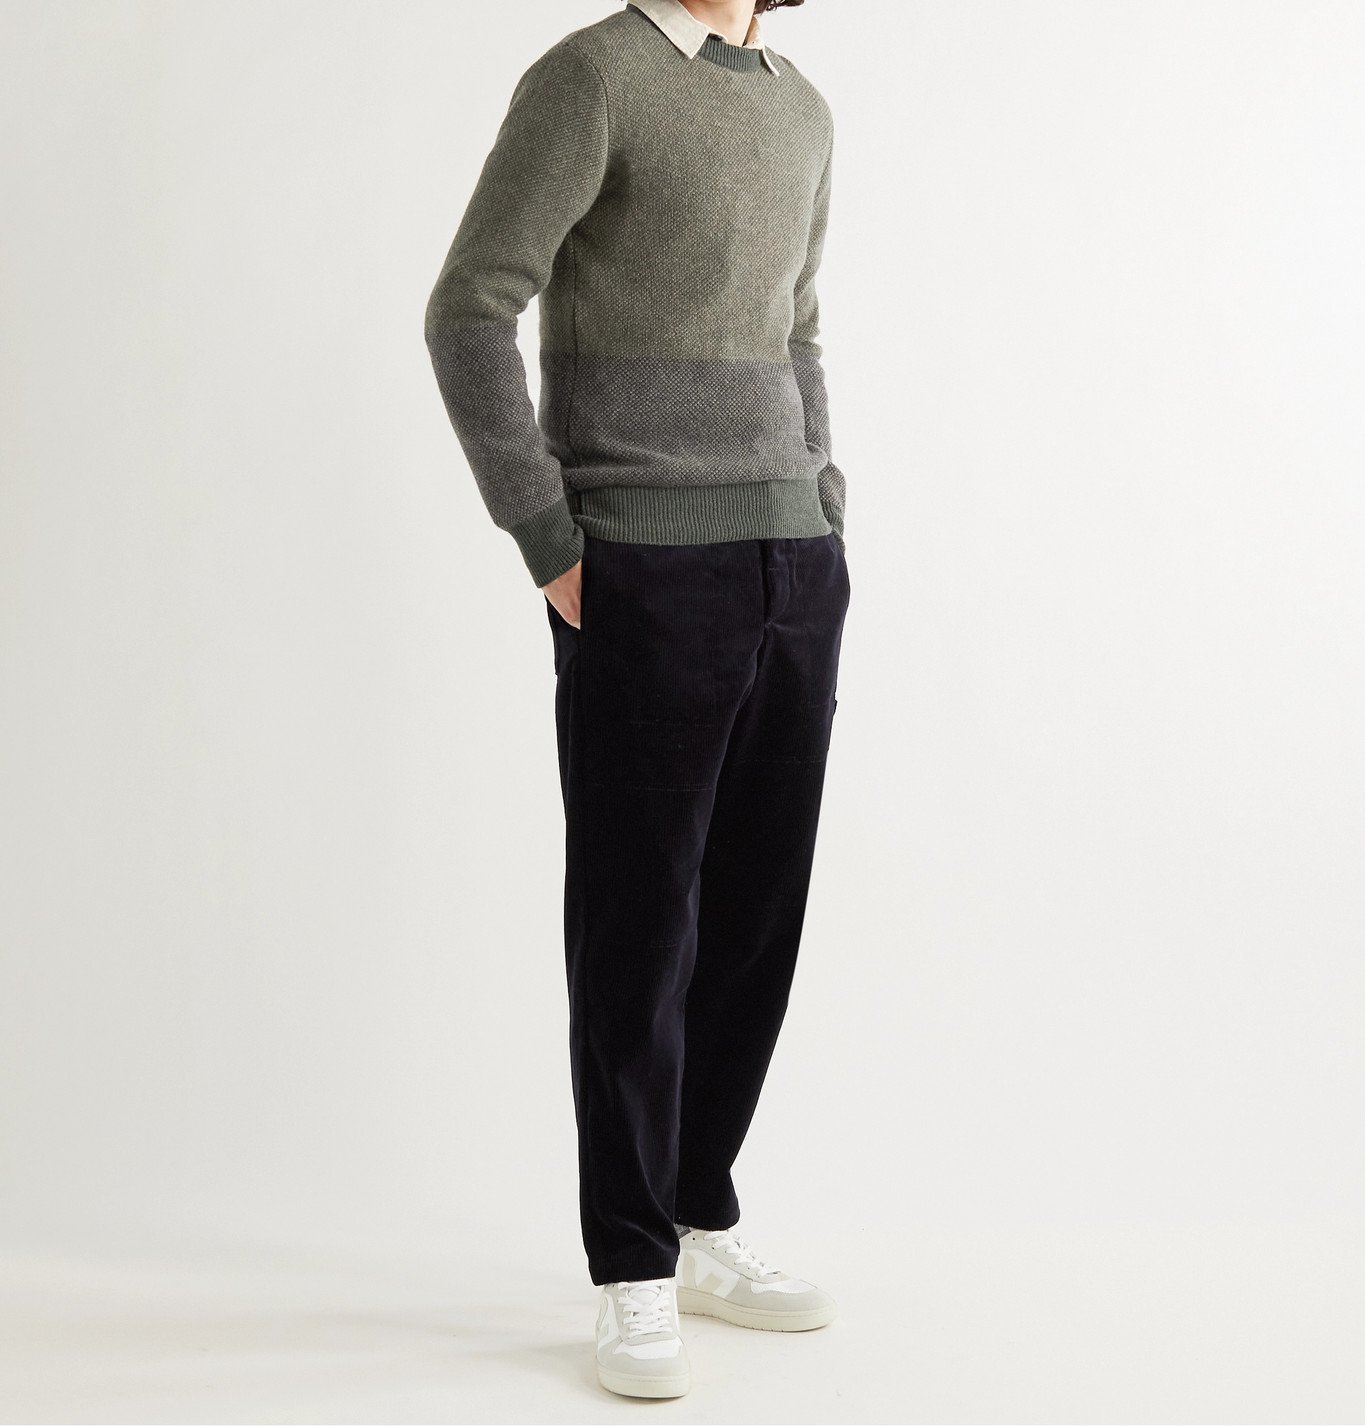 OLIVER SPENCER - Blenheim Striped Mélange Wool Sweater - Multi